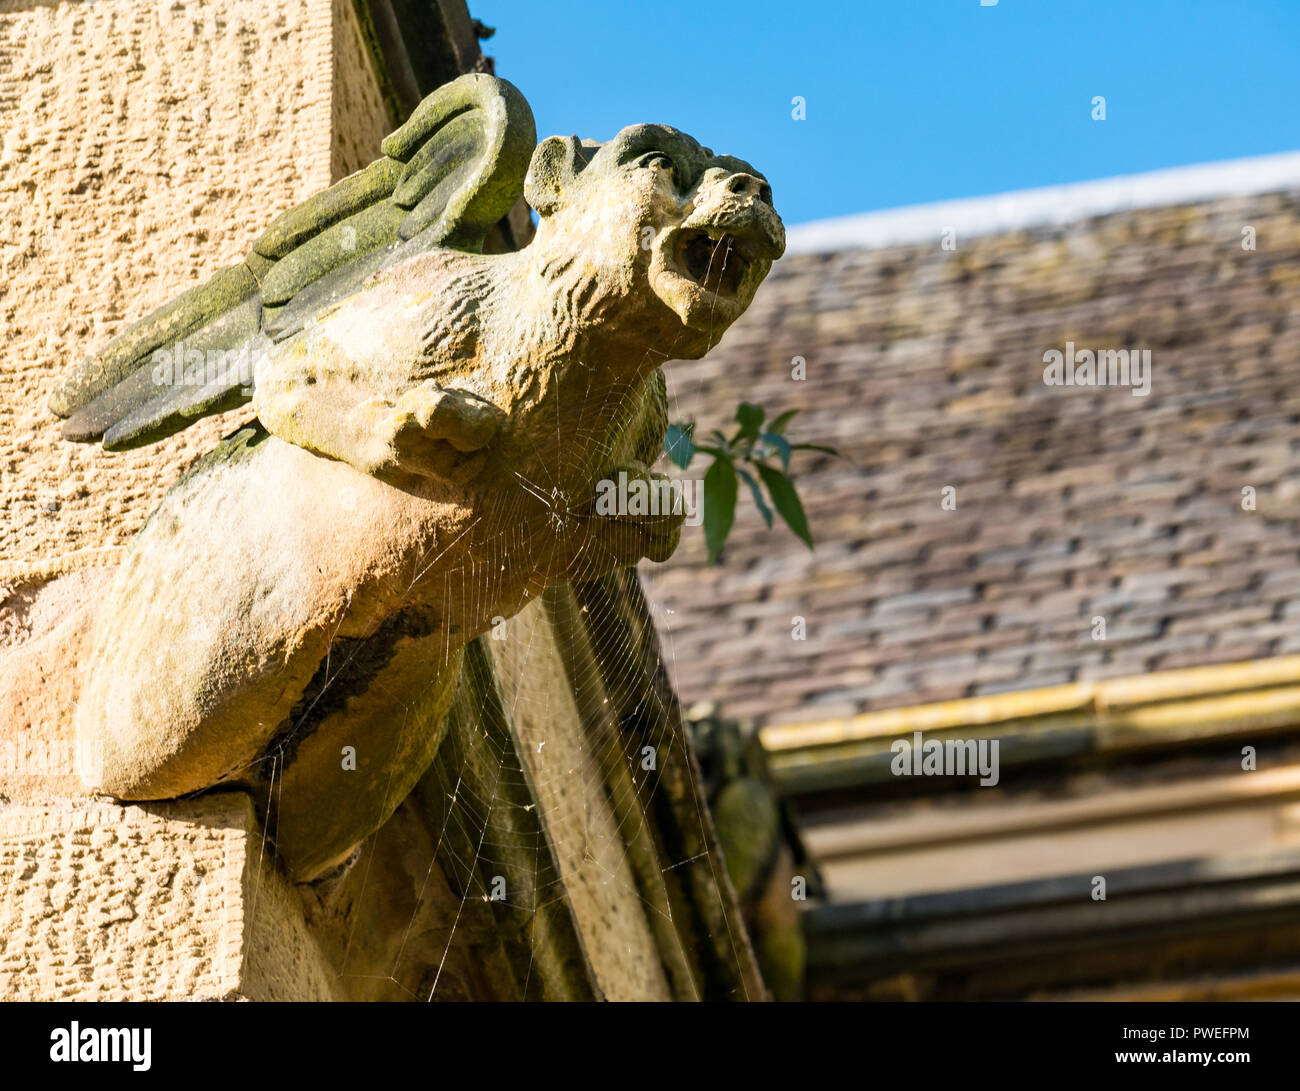 Sandstein Tier mit Flügeln gargoyle von cobweb abgedeckt, die St. Mary's Episcopal Church, Dalkeith, Midlothian, Schottland, Großbritannien Stockfoto